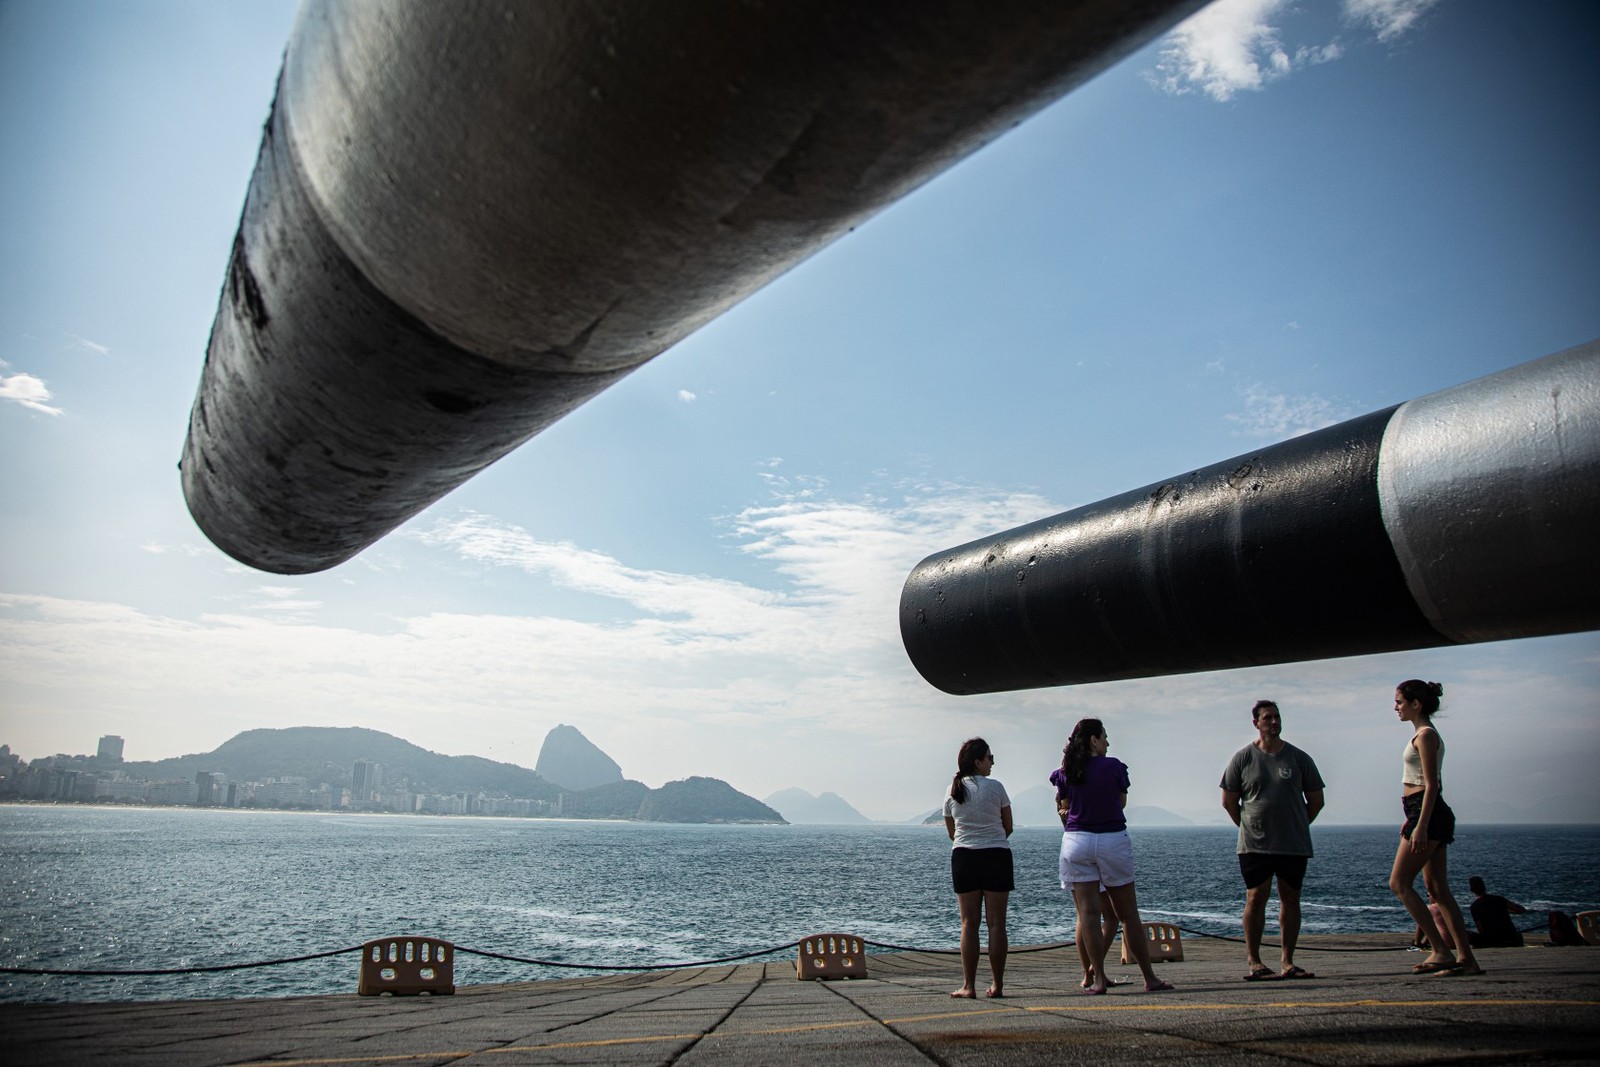 Forte de Copacabana será concedido à iniciativa privada — Foto: Hermes de Paula